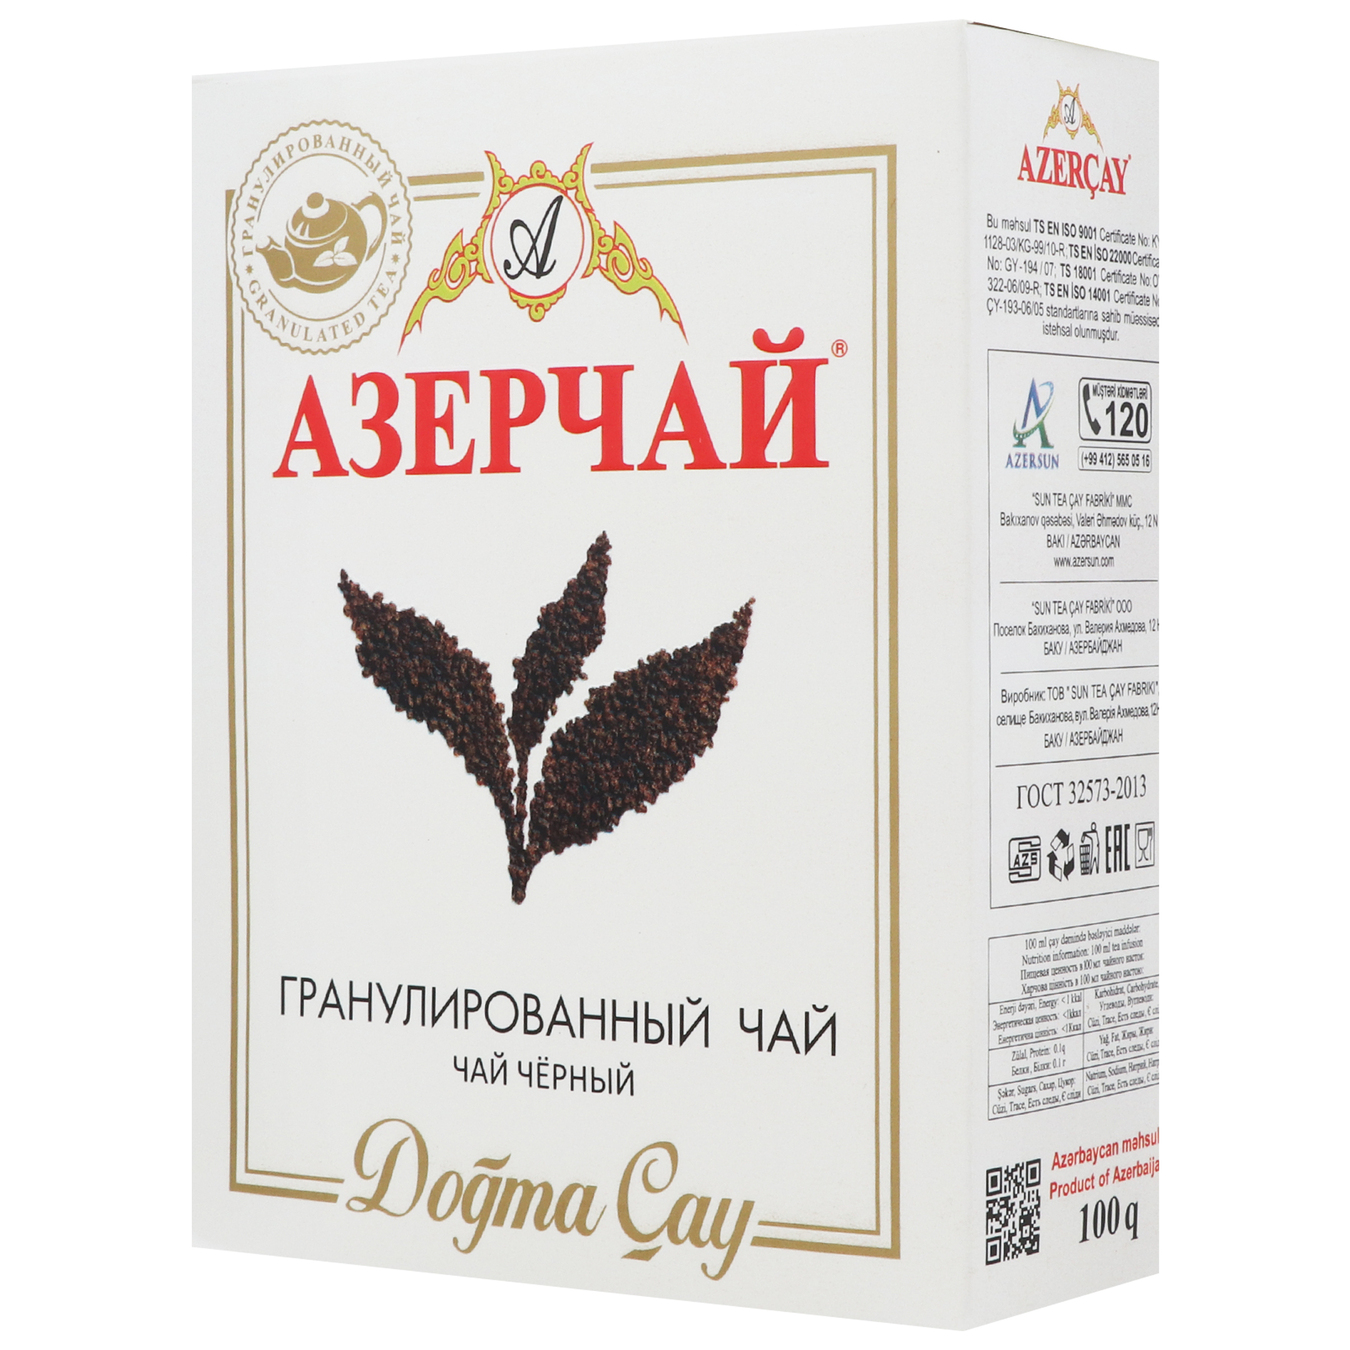 Azercay black granulated tea 100g